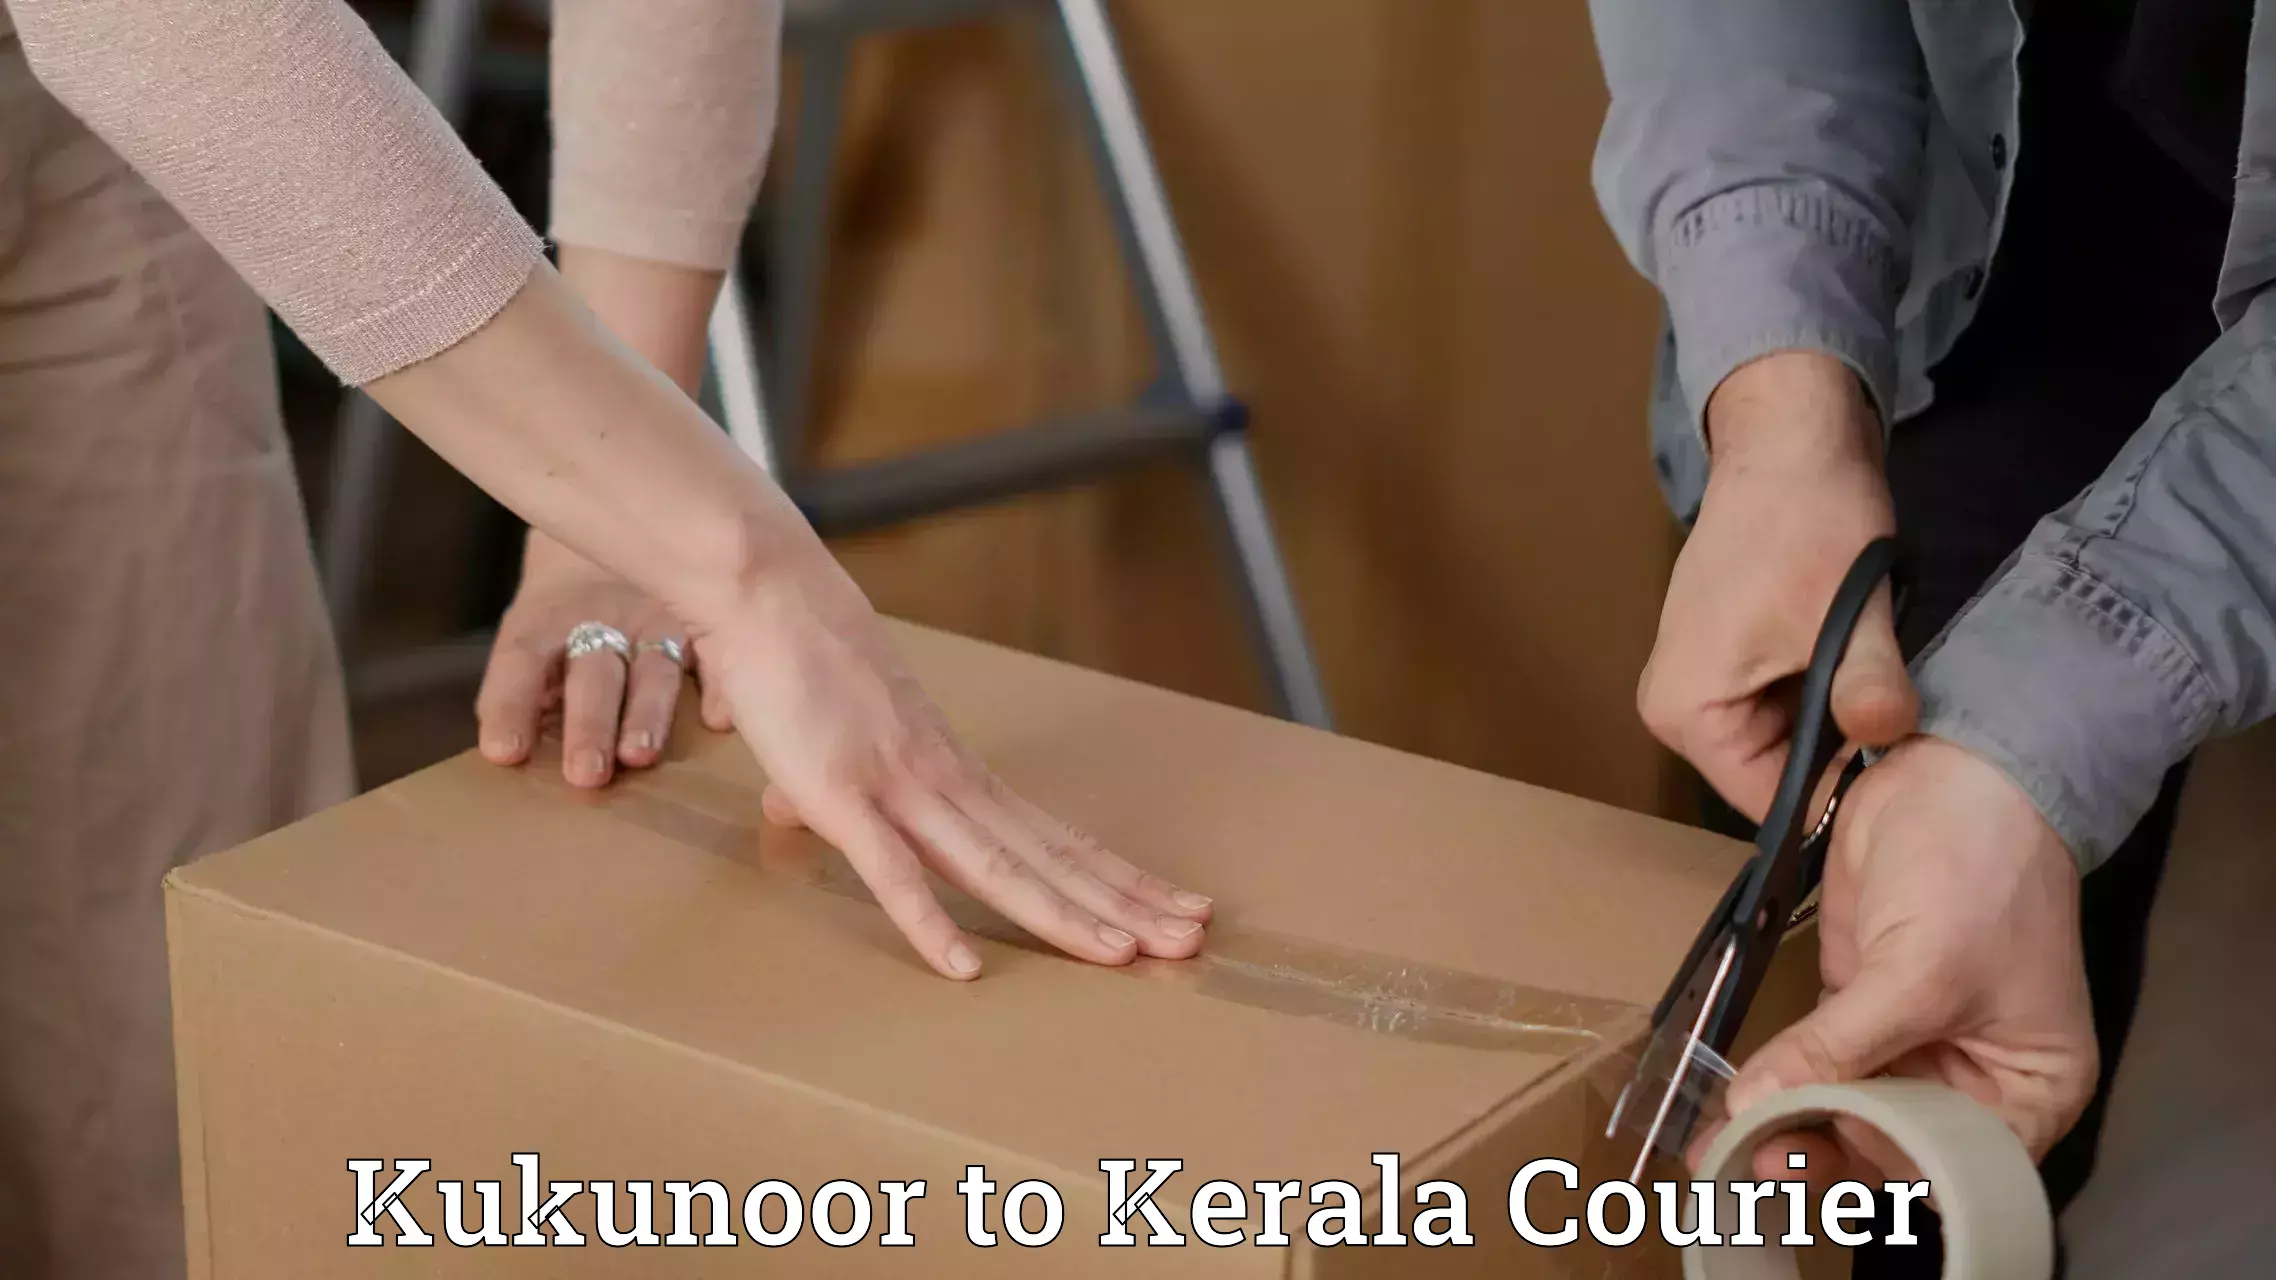 Nationwide delivery network Kukunoor to Kerala